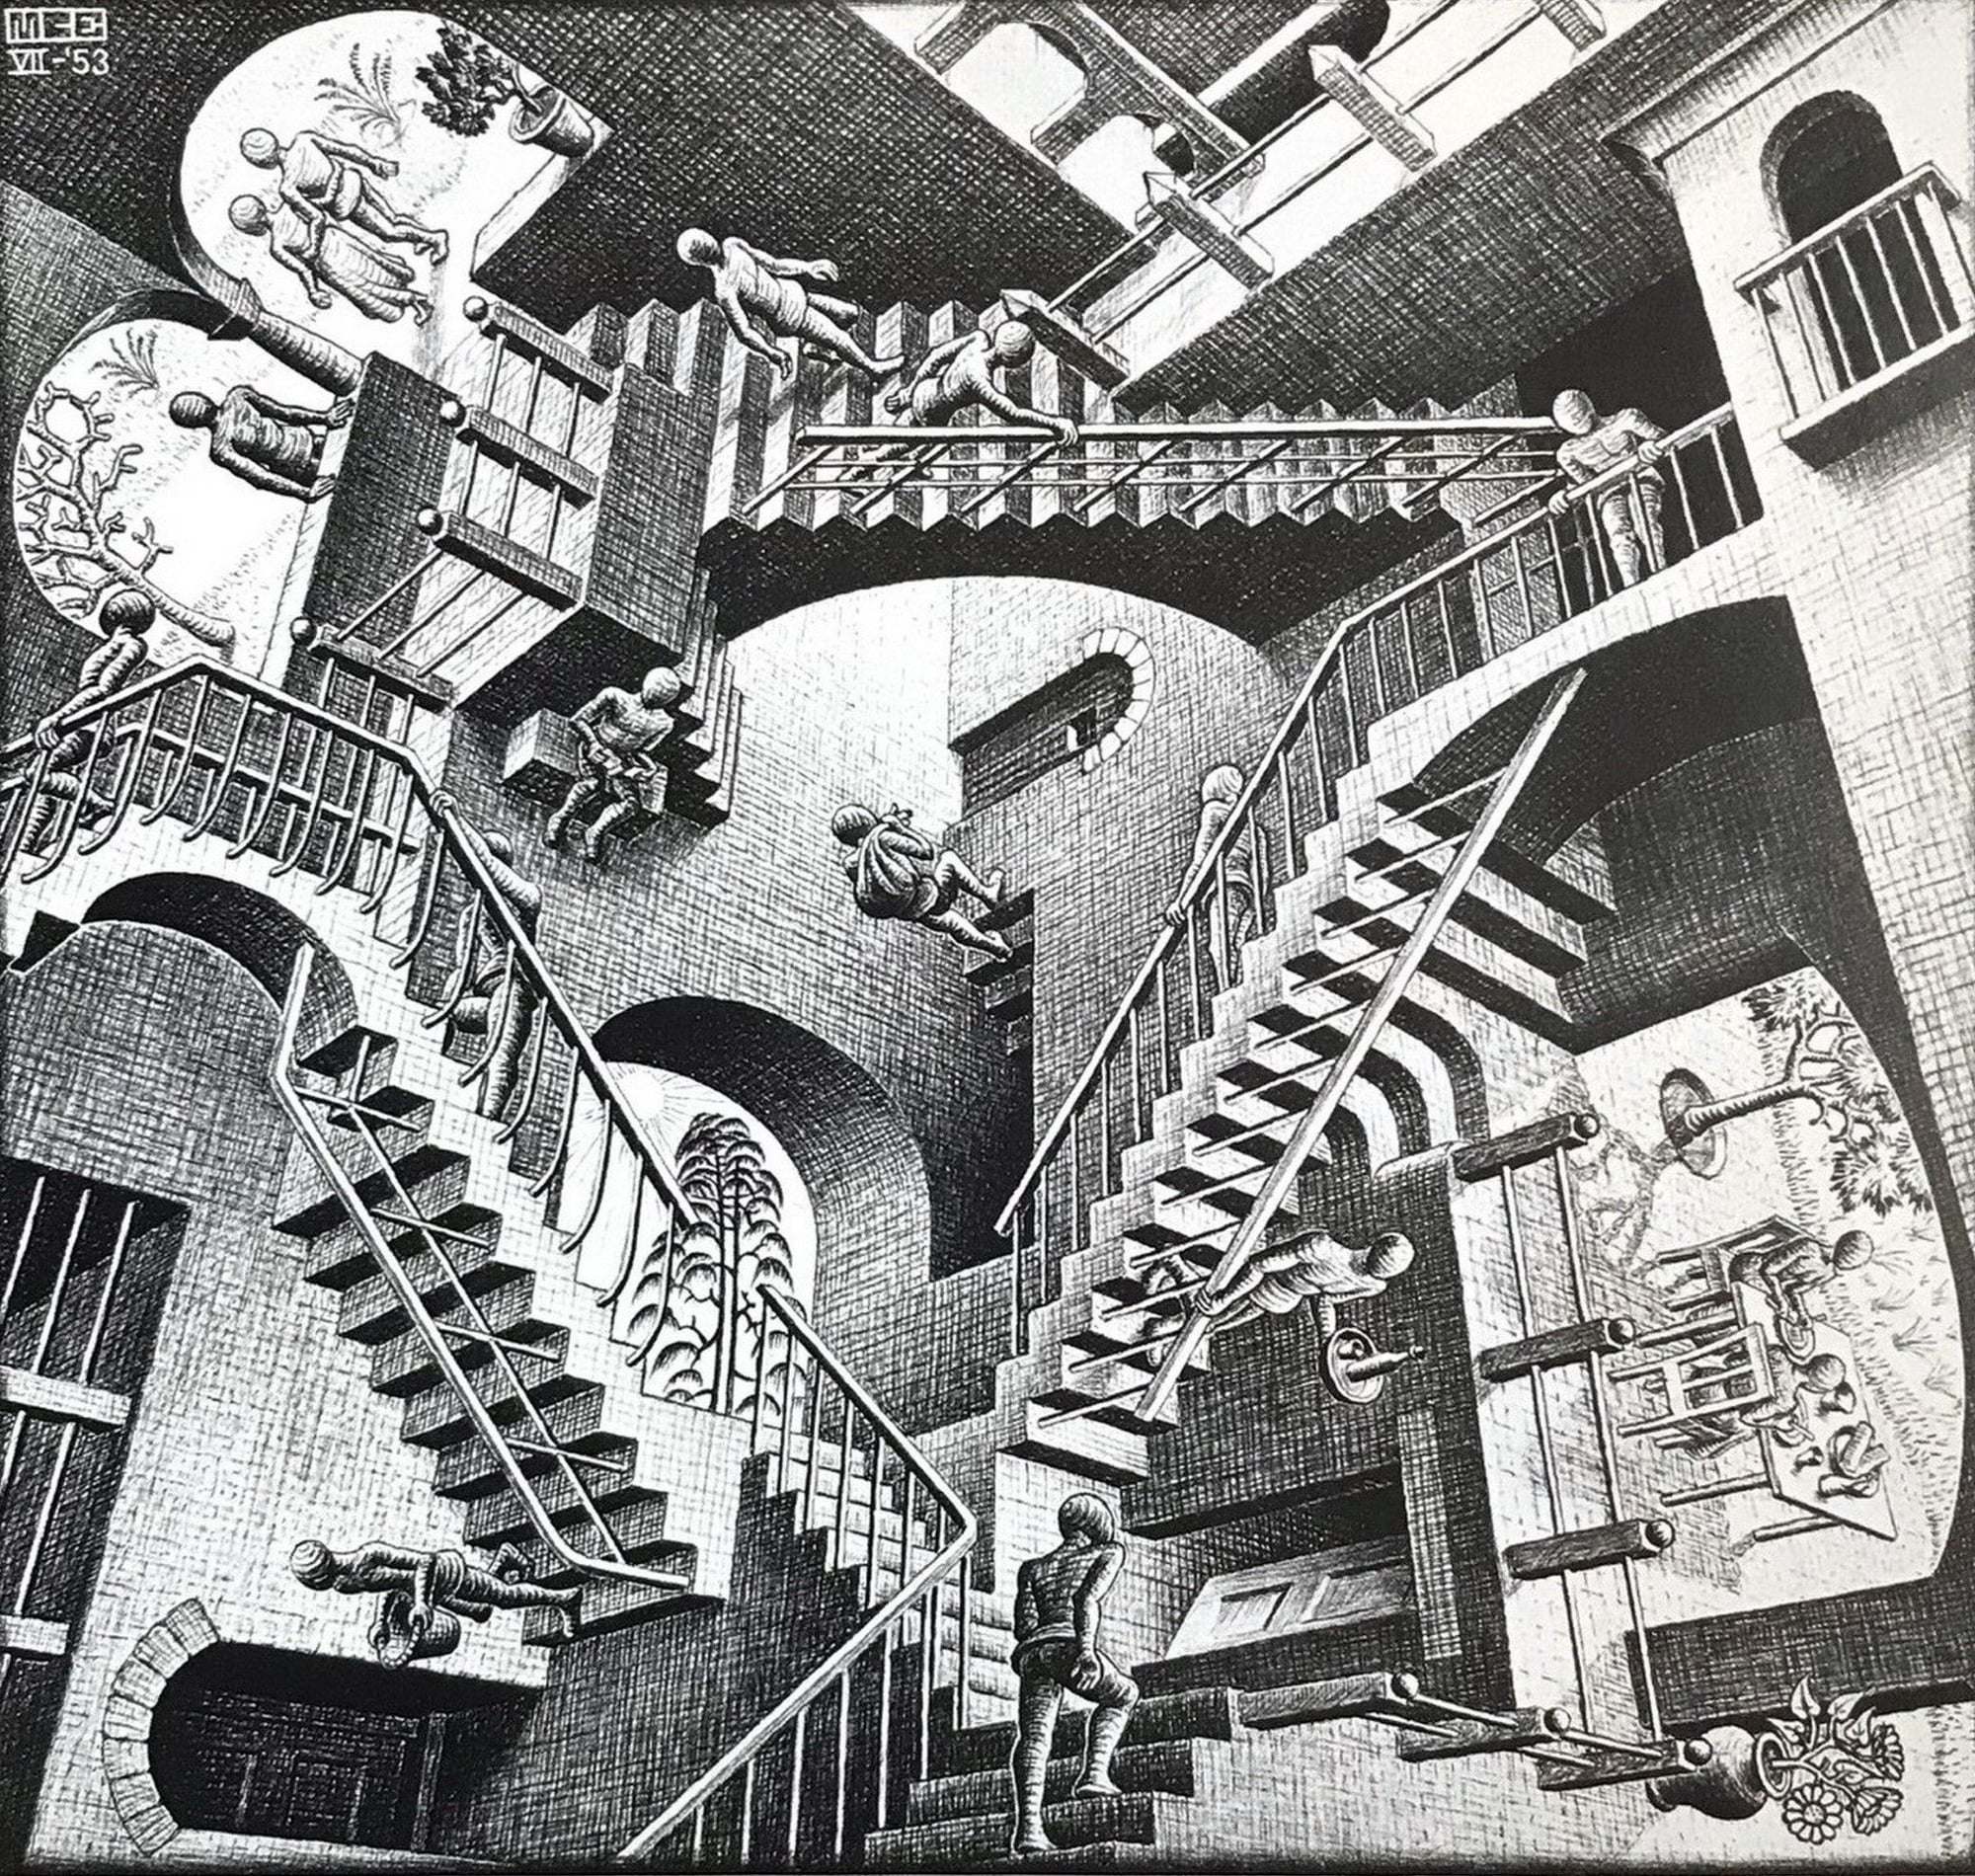 M.C. Escher's 